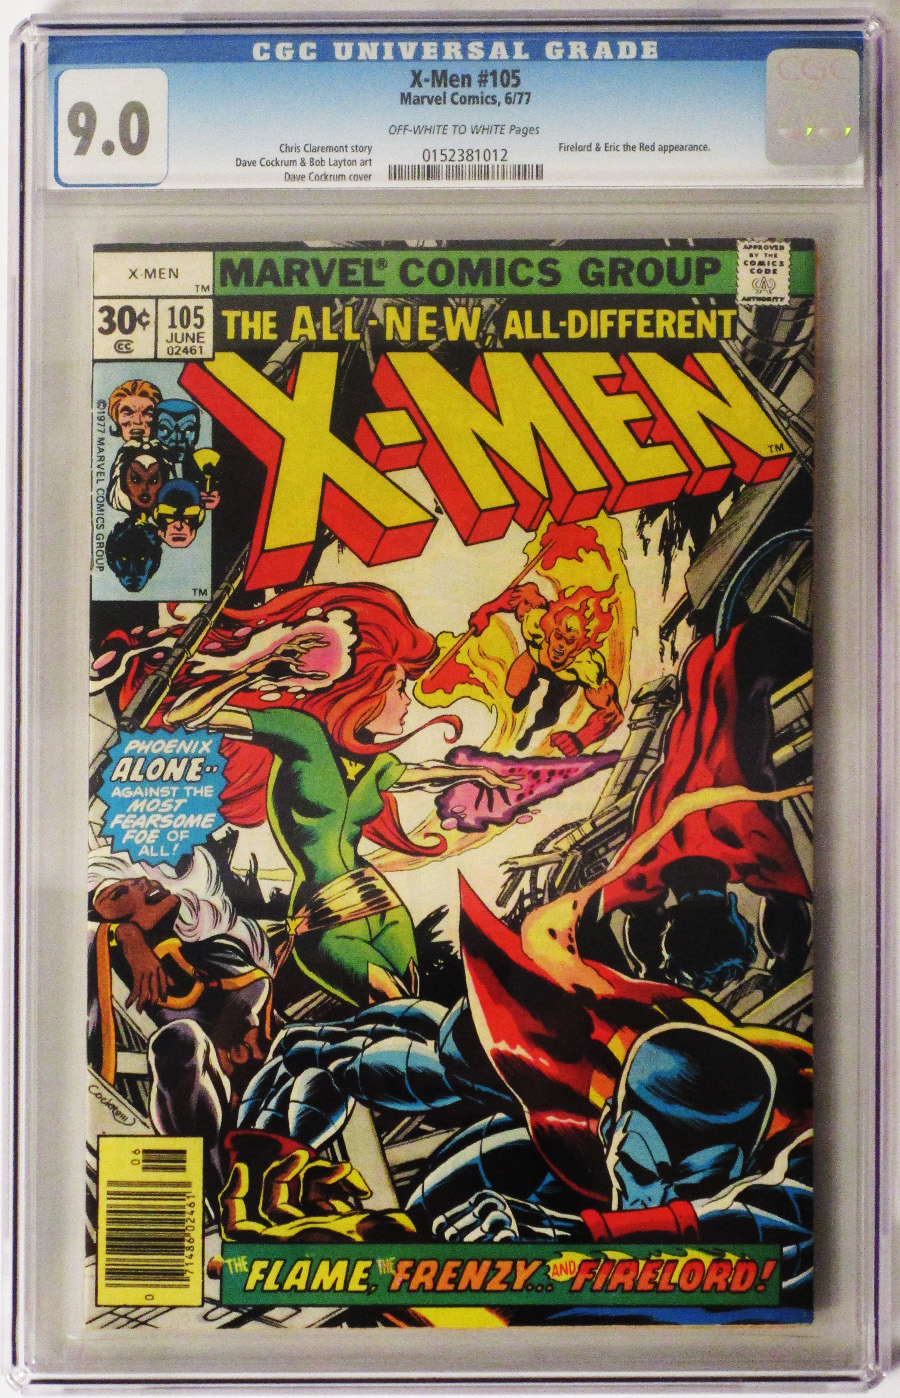 X-Men Vol 1 #105 Cover C CGC 9.0 30-Cent Regular Cover